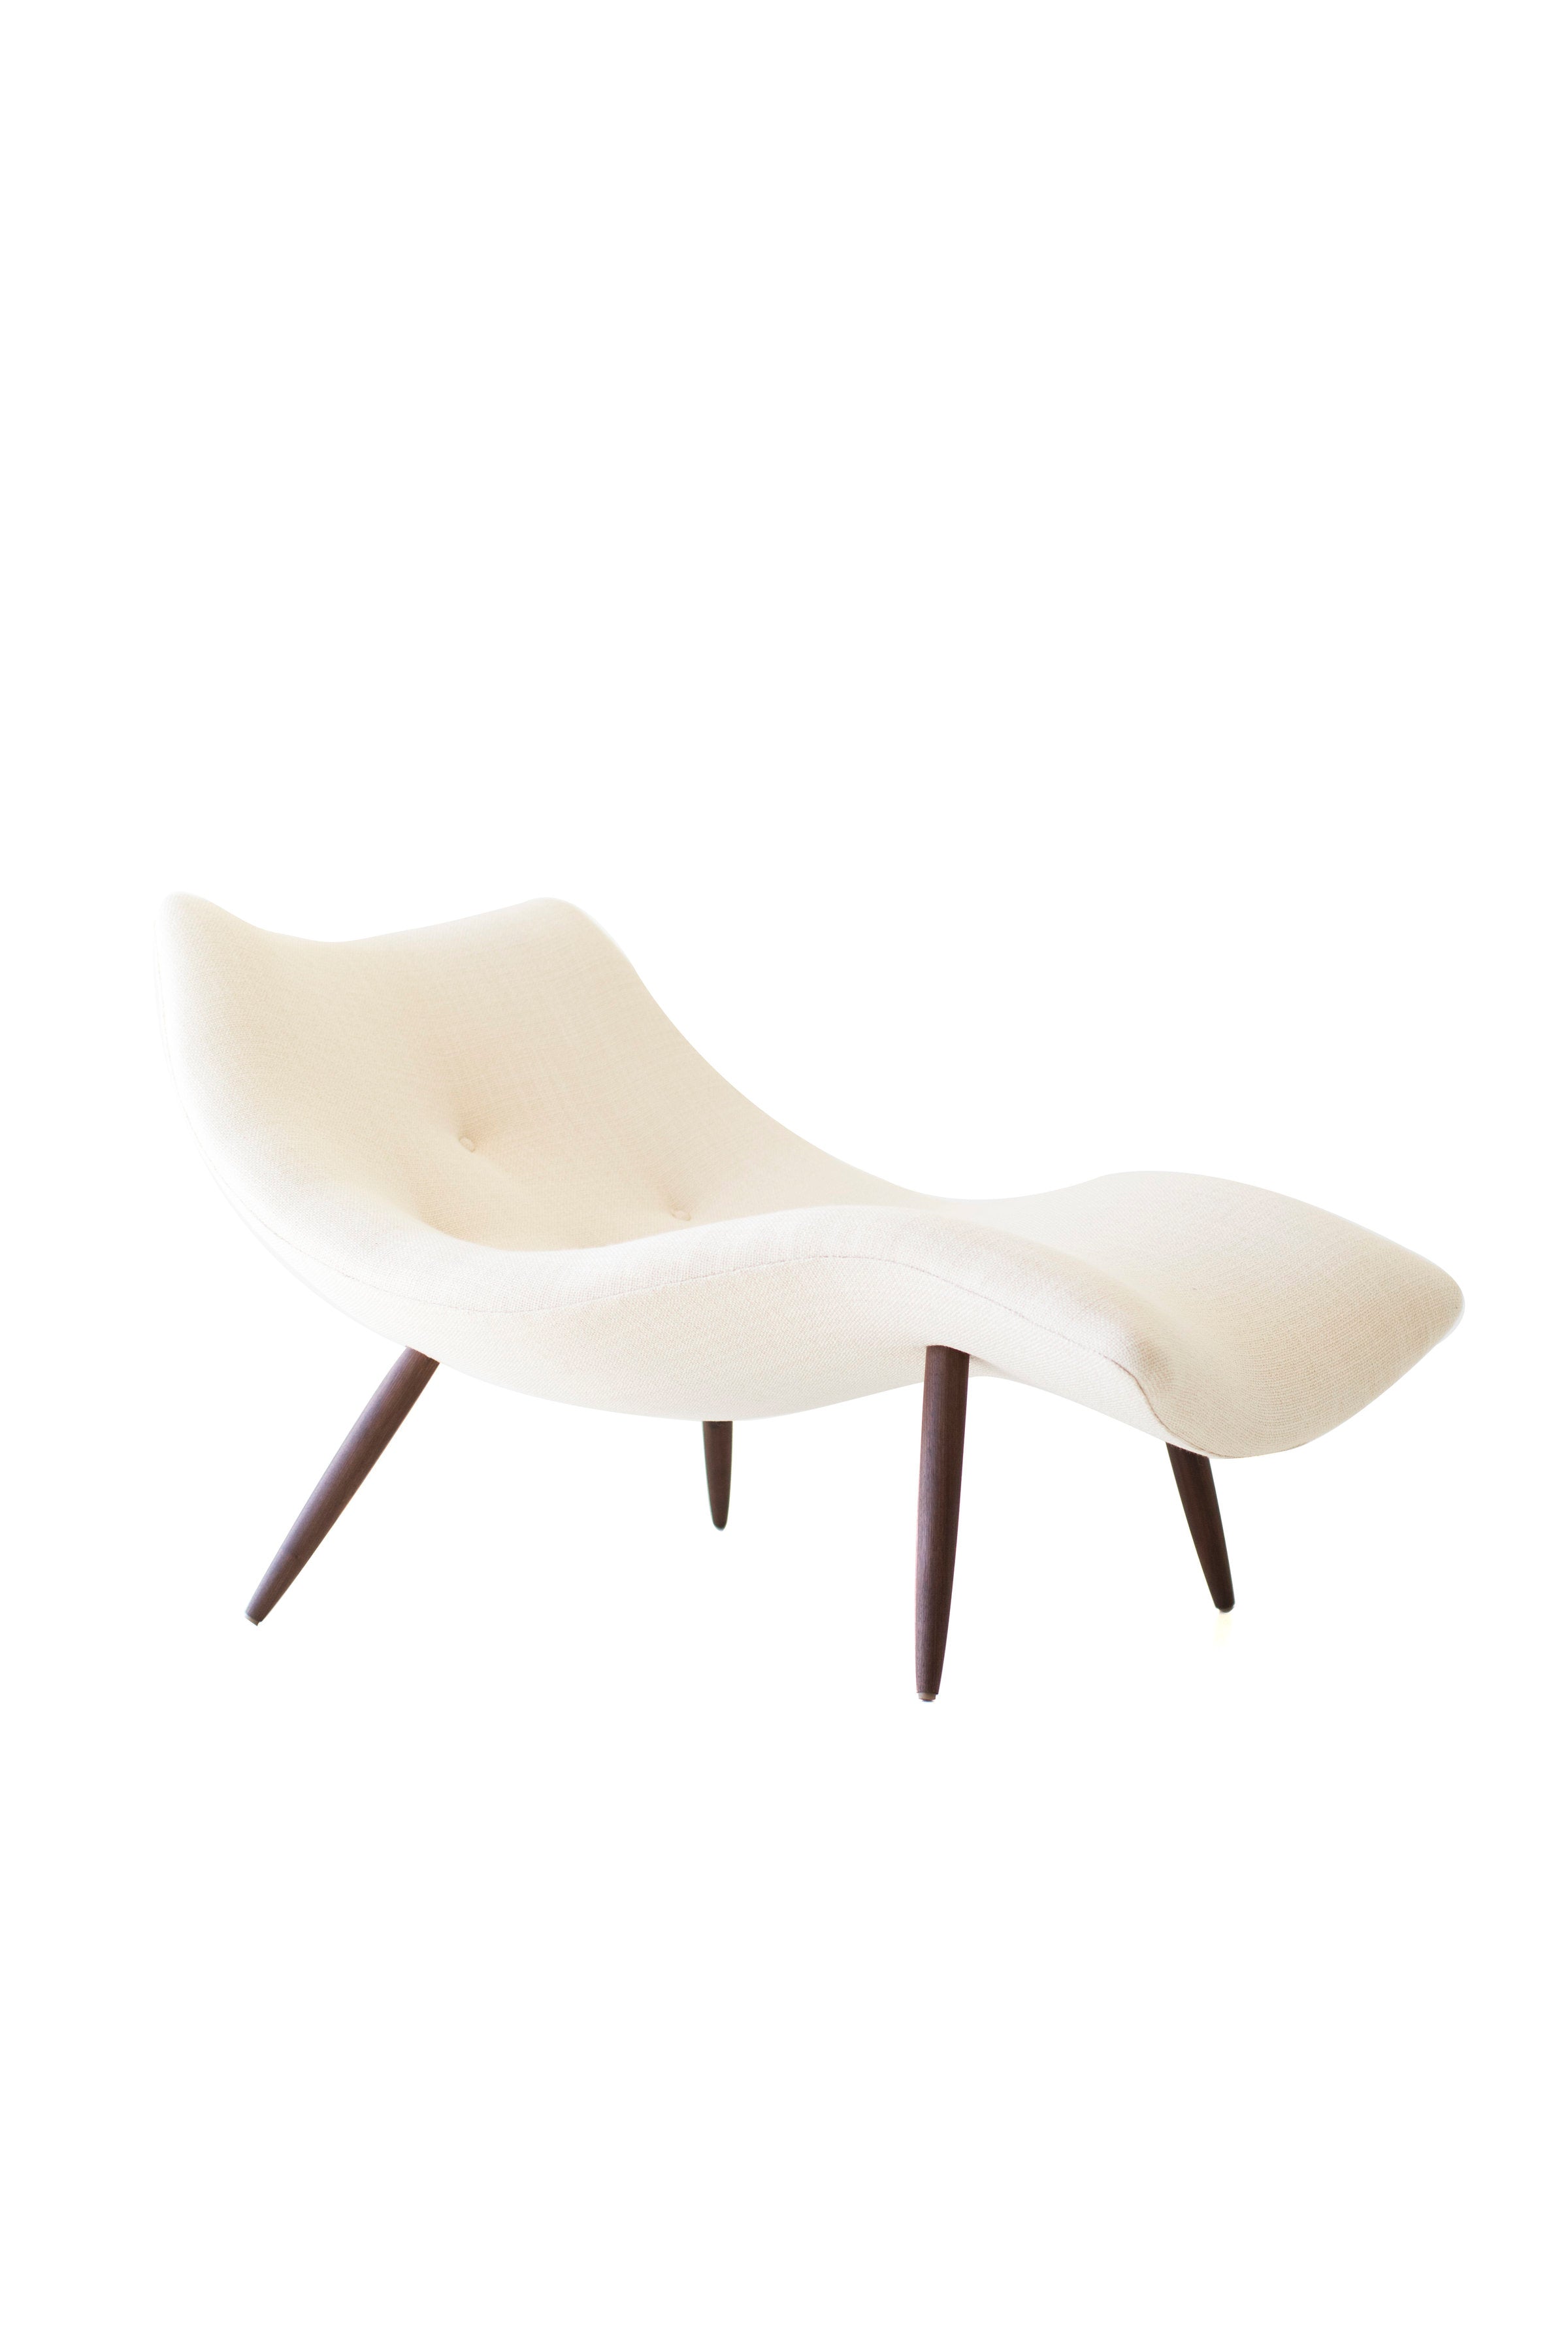 craft-associates-modern-chaise-lounge-1704-04